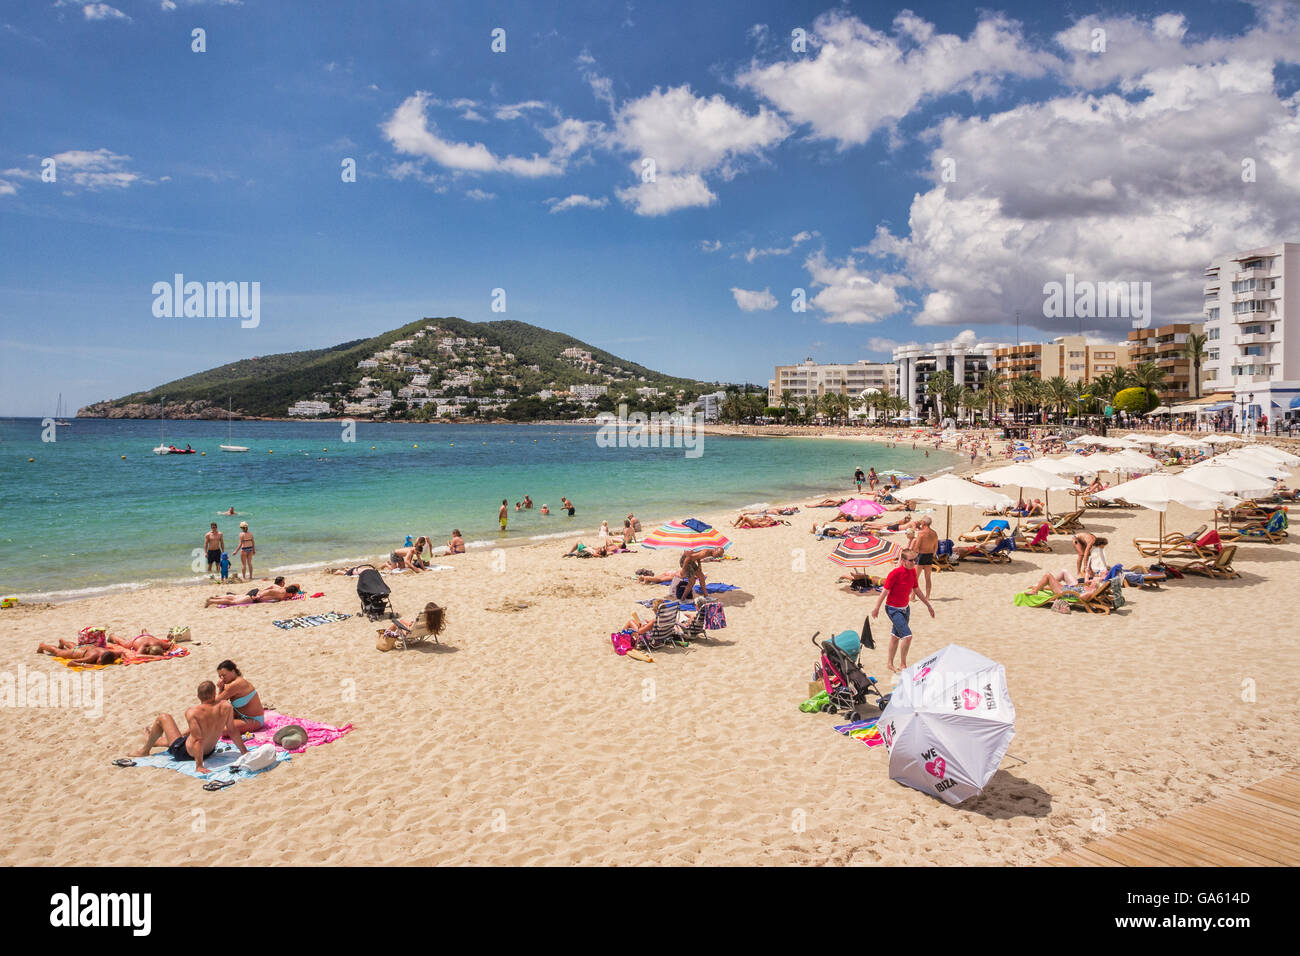 20 Juin 2016 : Santa Eularia, Ibiza, Espagne - La plage de Santa Eularia, Ibiza, Espagne. Banque D'Images